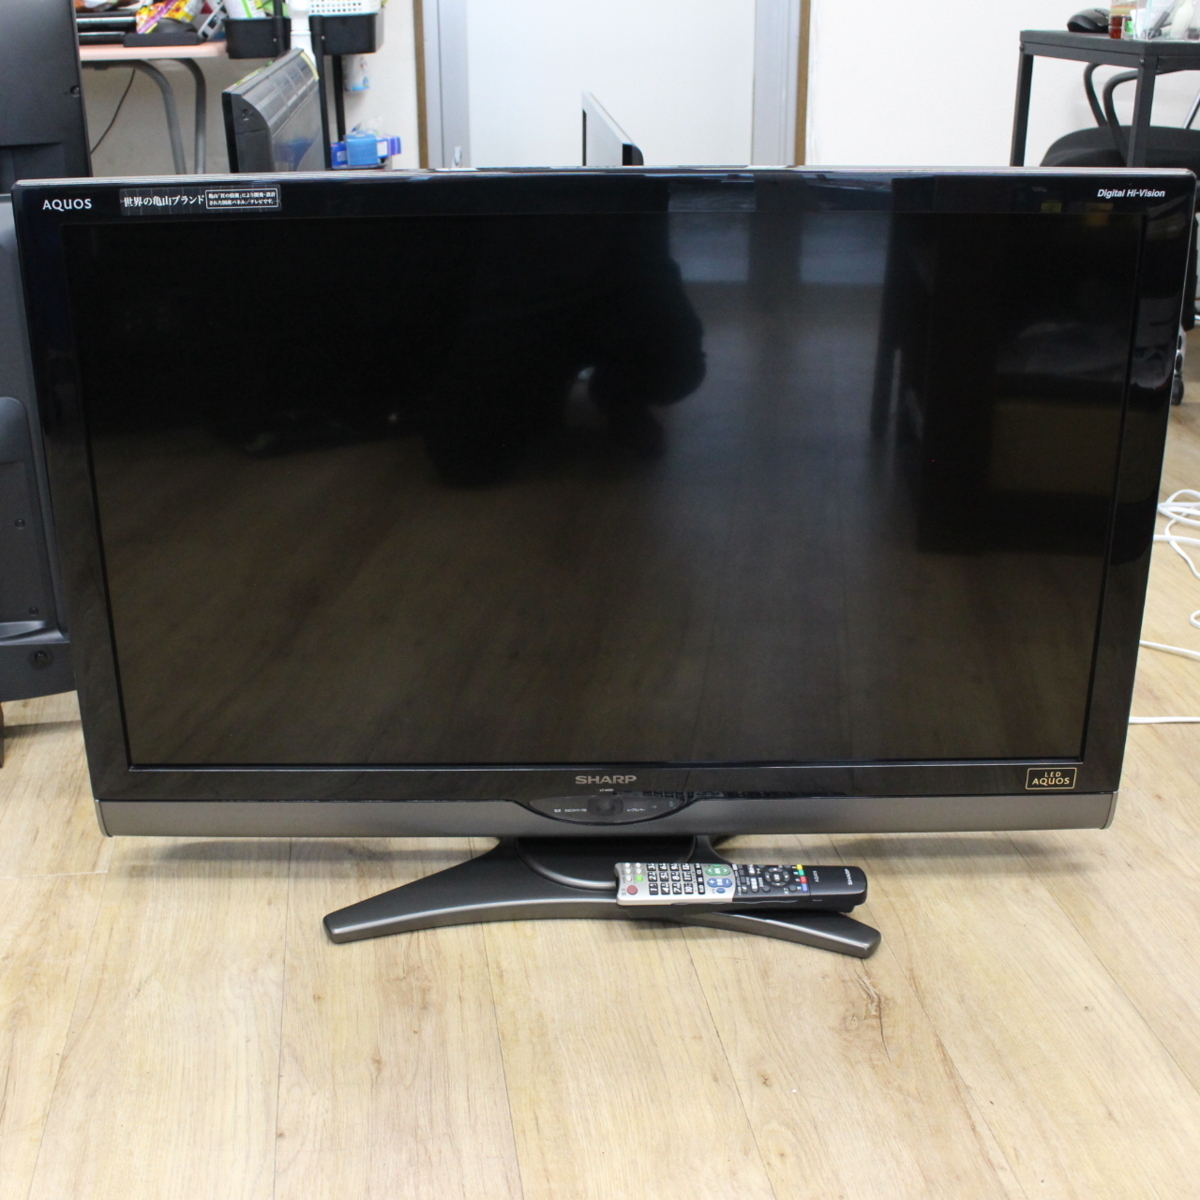 東京都調布市にて シャープ 液晶テレビ LC-40SE1 2010年製 を出張買取させて頂きました。